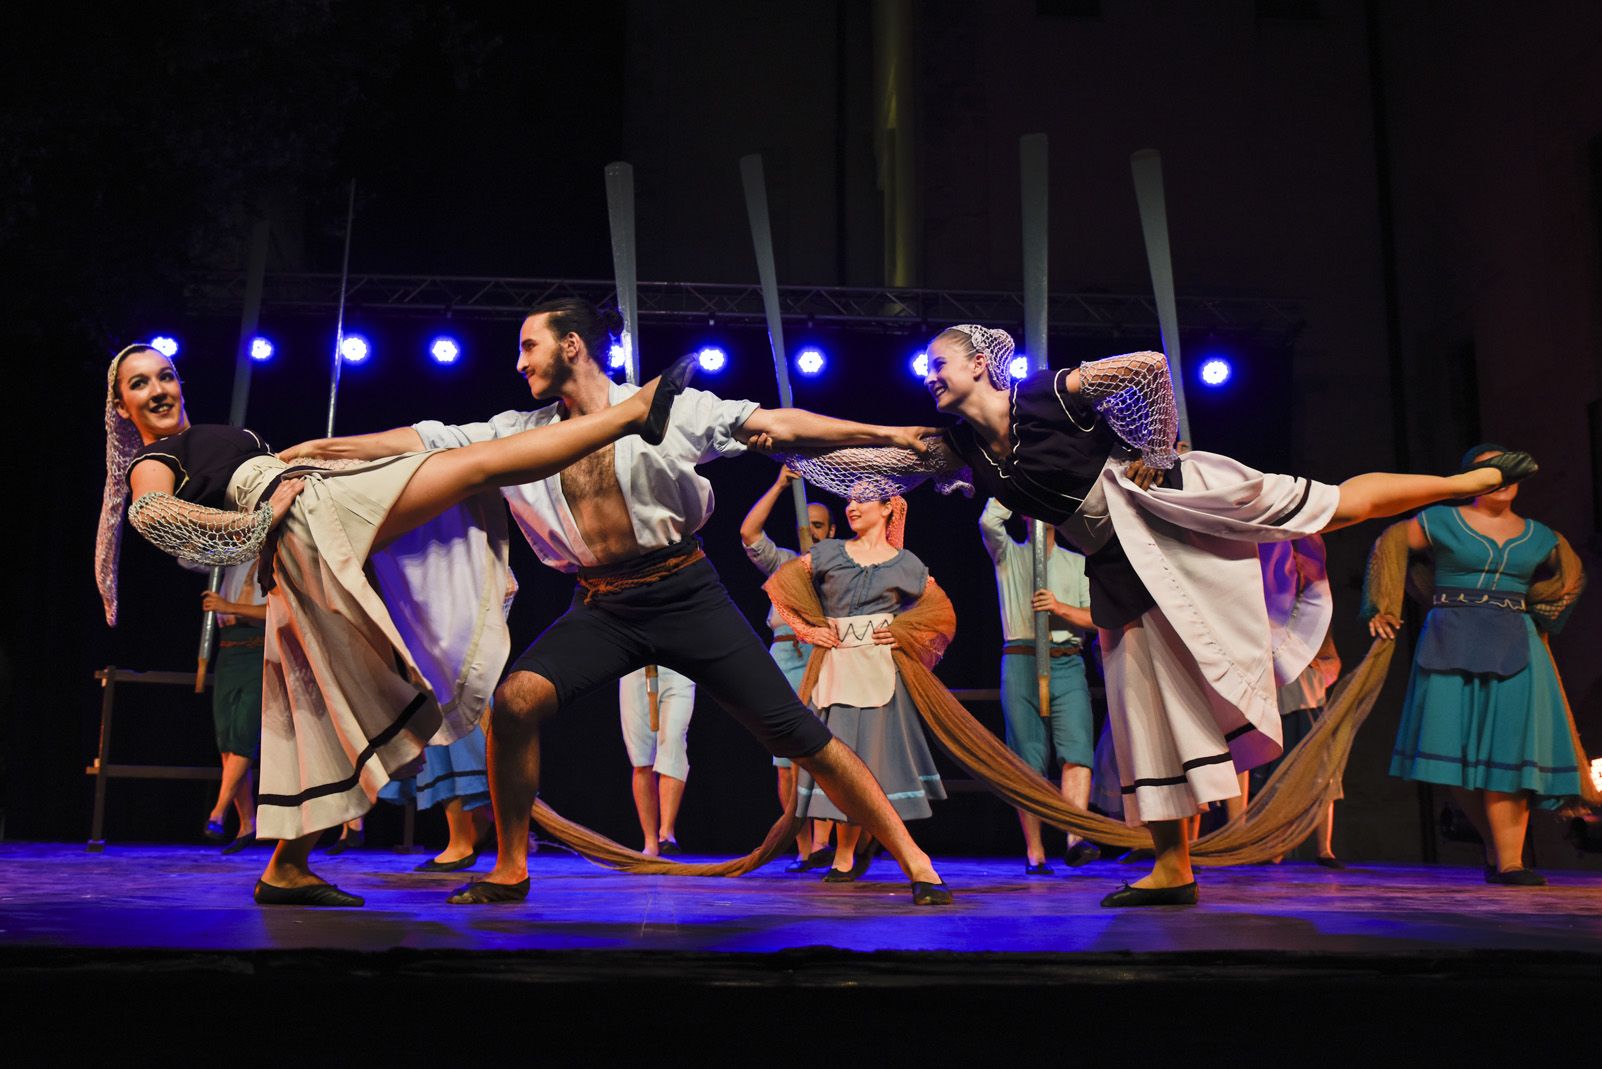 Trasdansar: espectacle de dansa d'arrel tradicional per el grup Mediterrania. Foto: Bernat Millet.